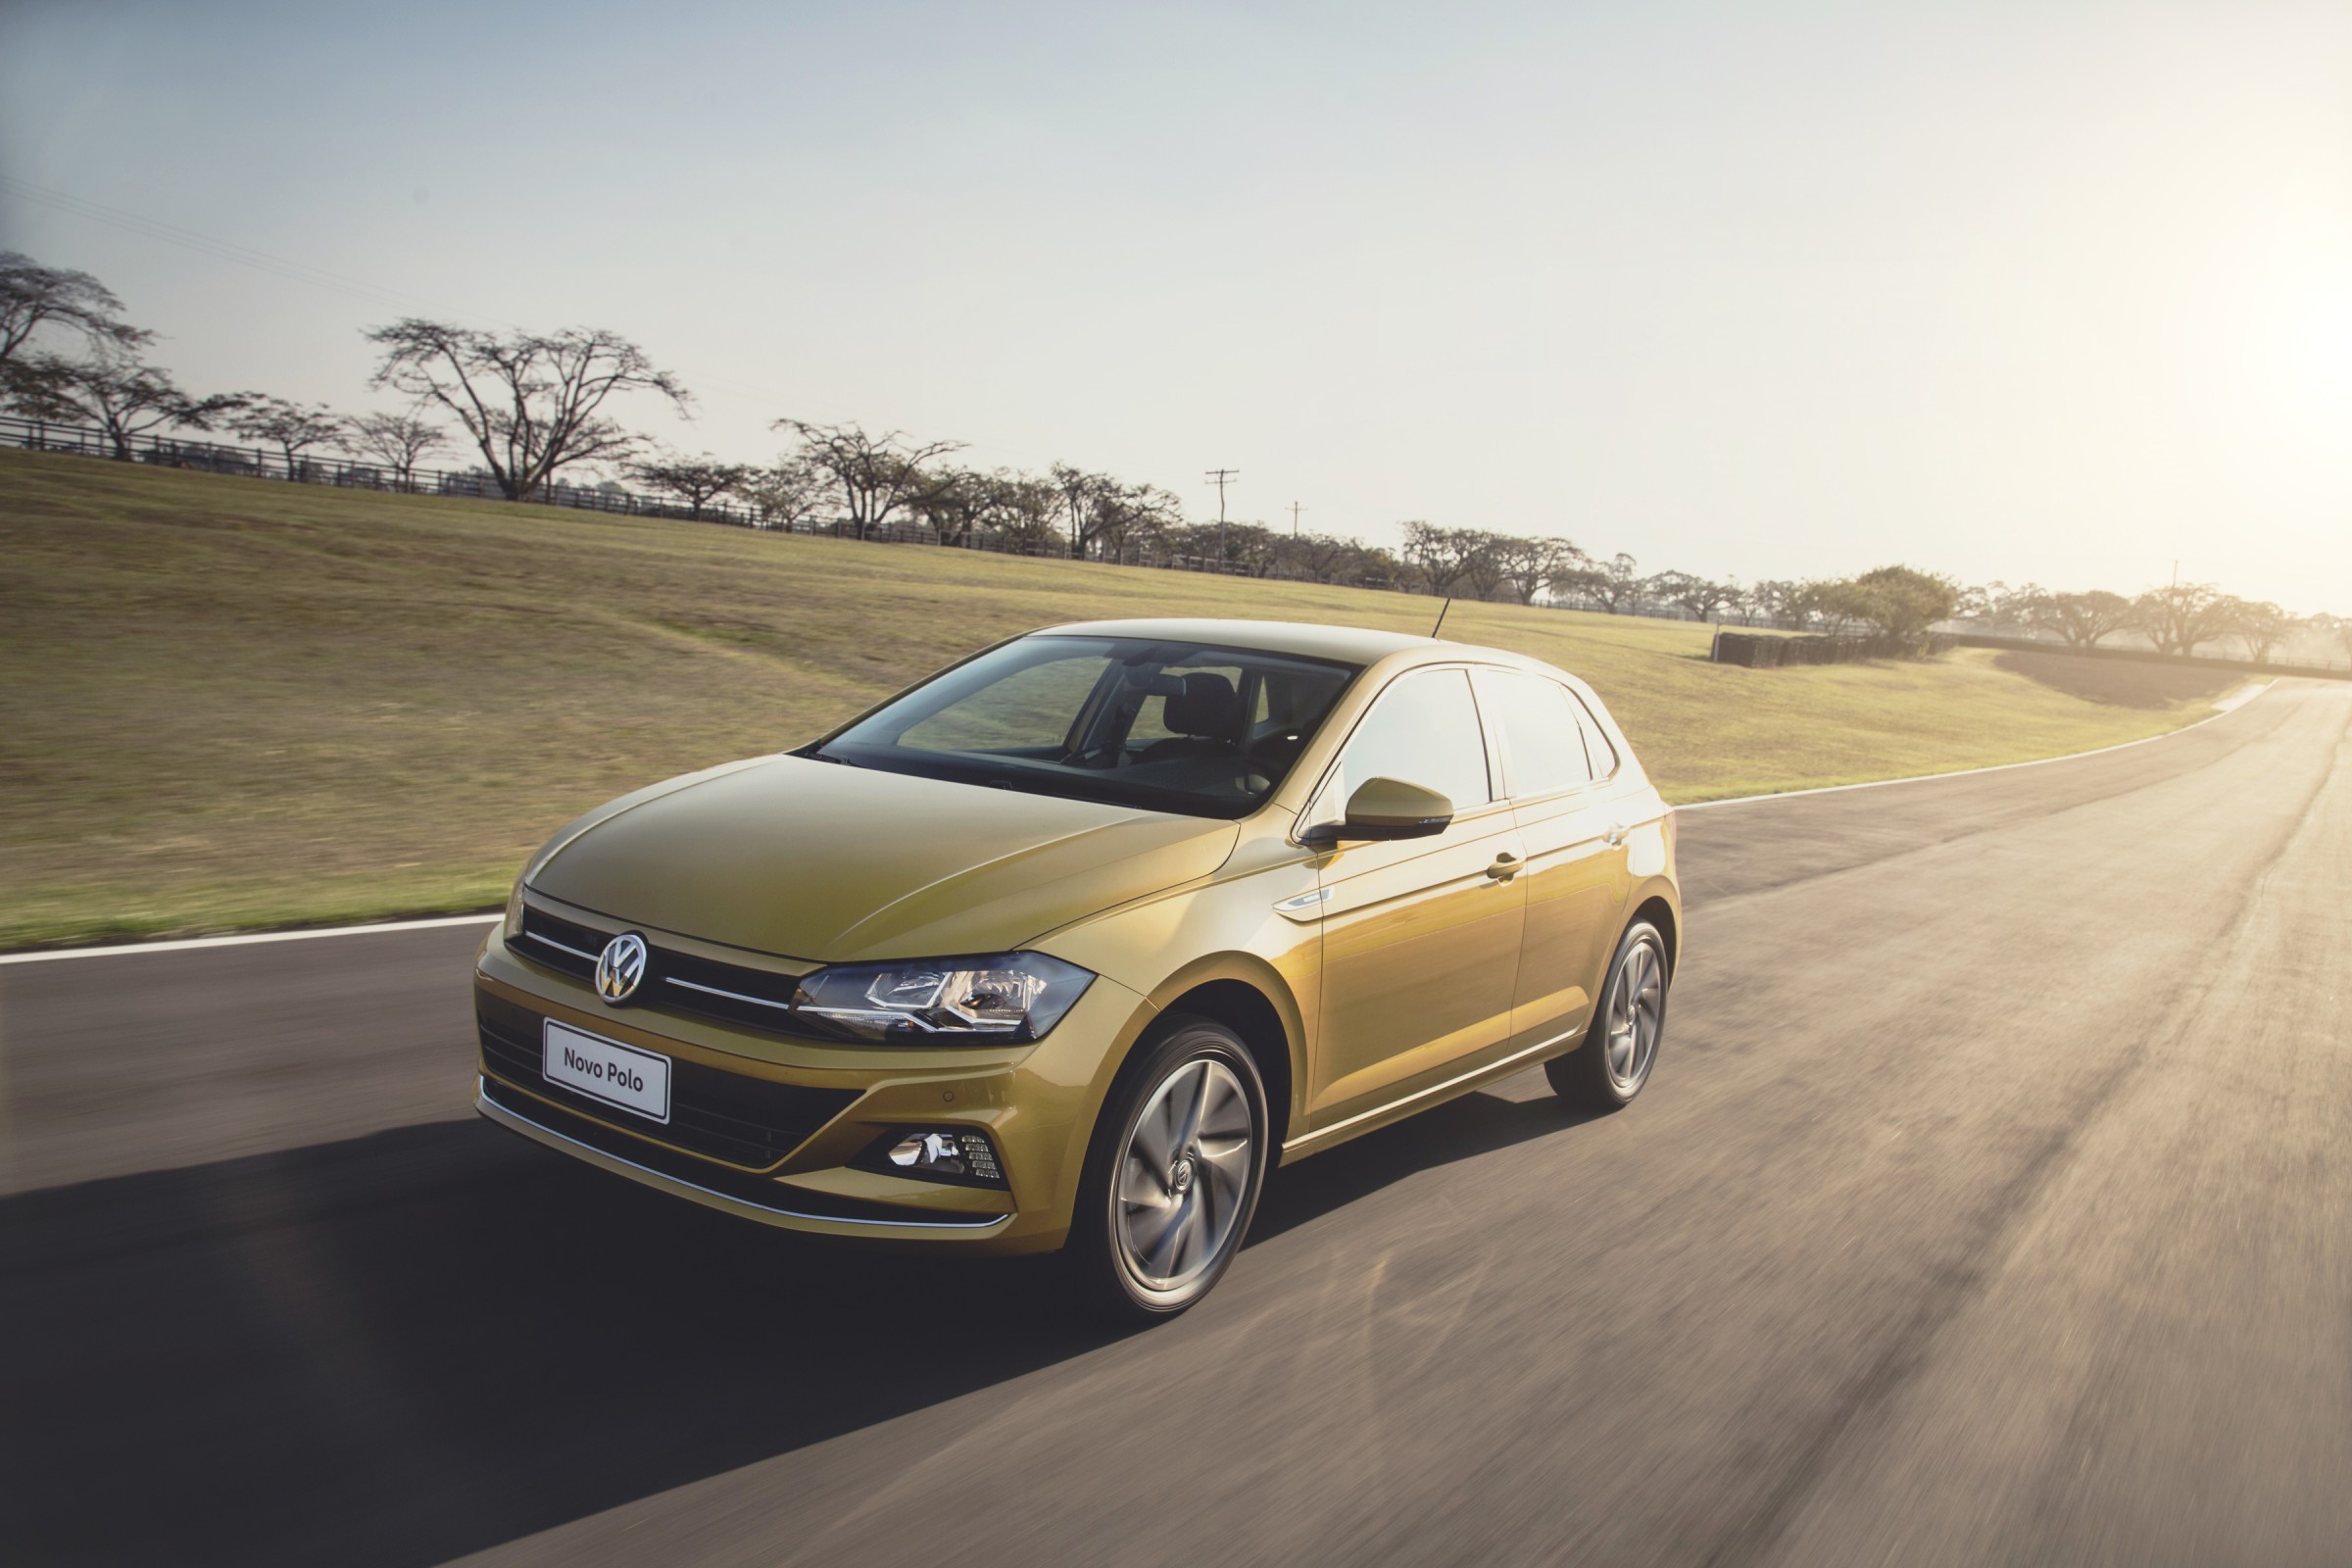 Novo Volkswagen Polo 2018 dourado de frente em movimento na pista com sua frente com elementos horizontais